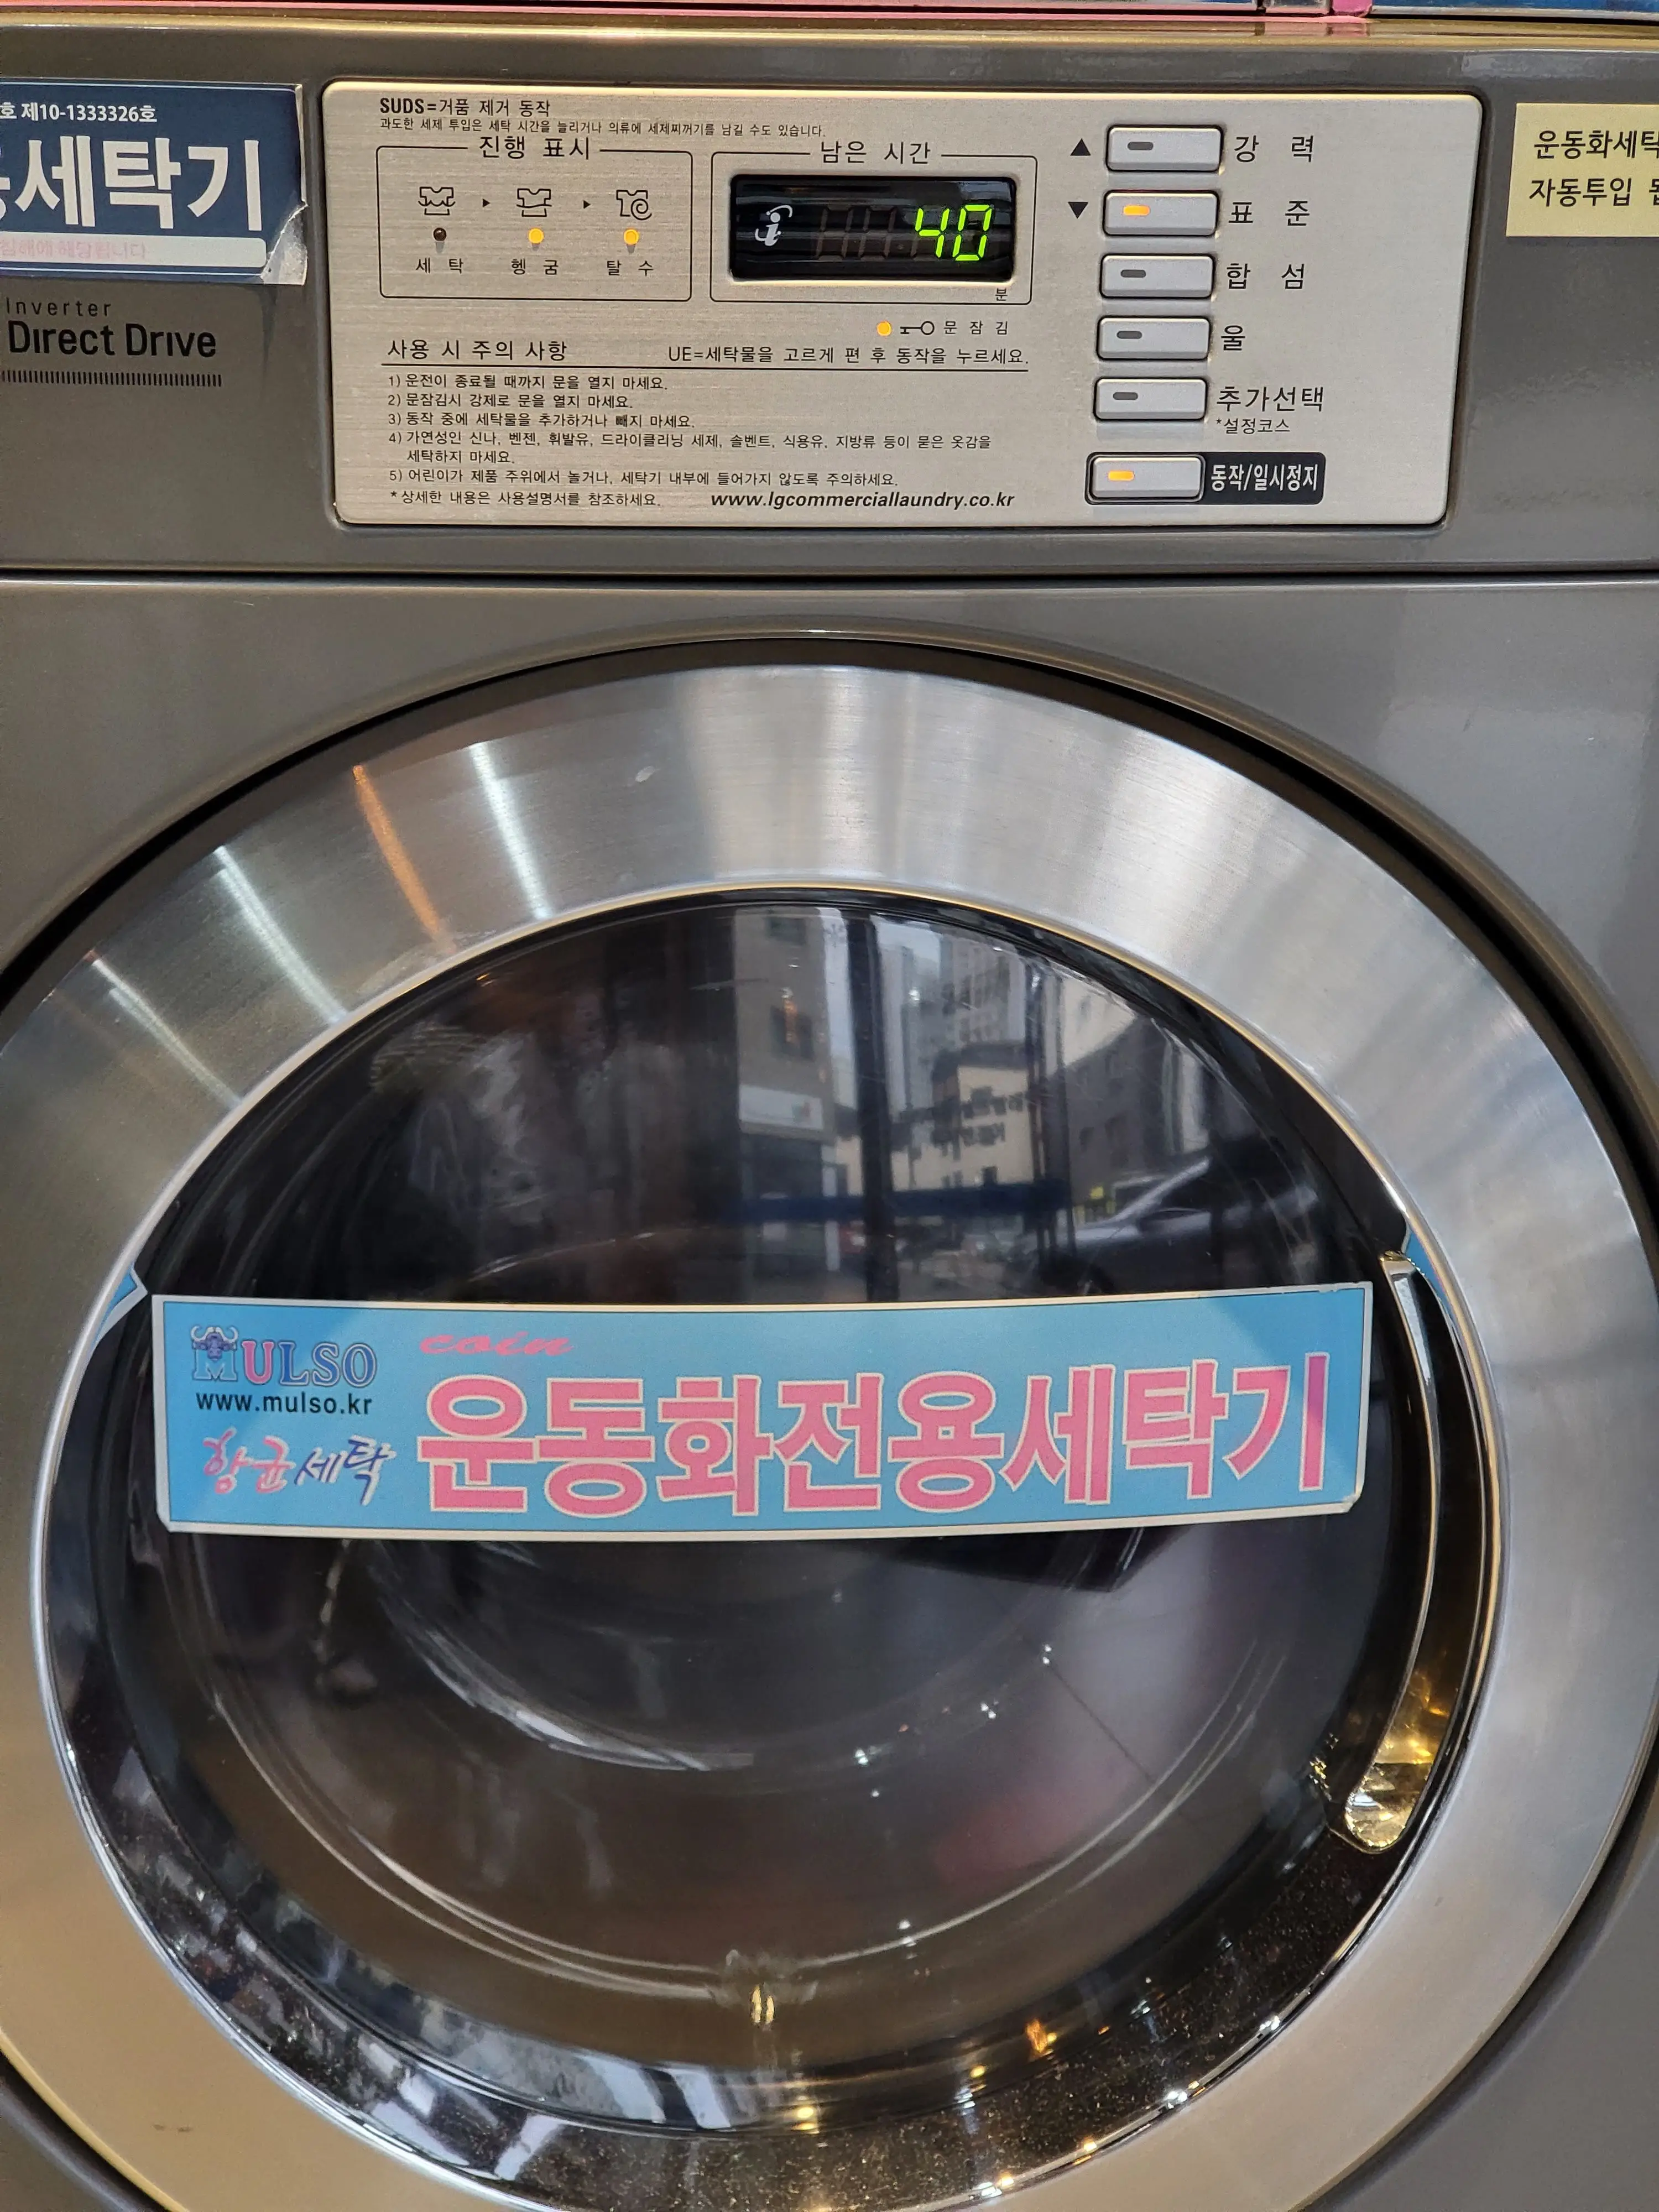 세탁기 표준 모드 시작